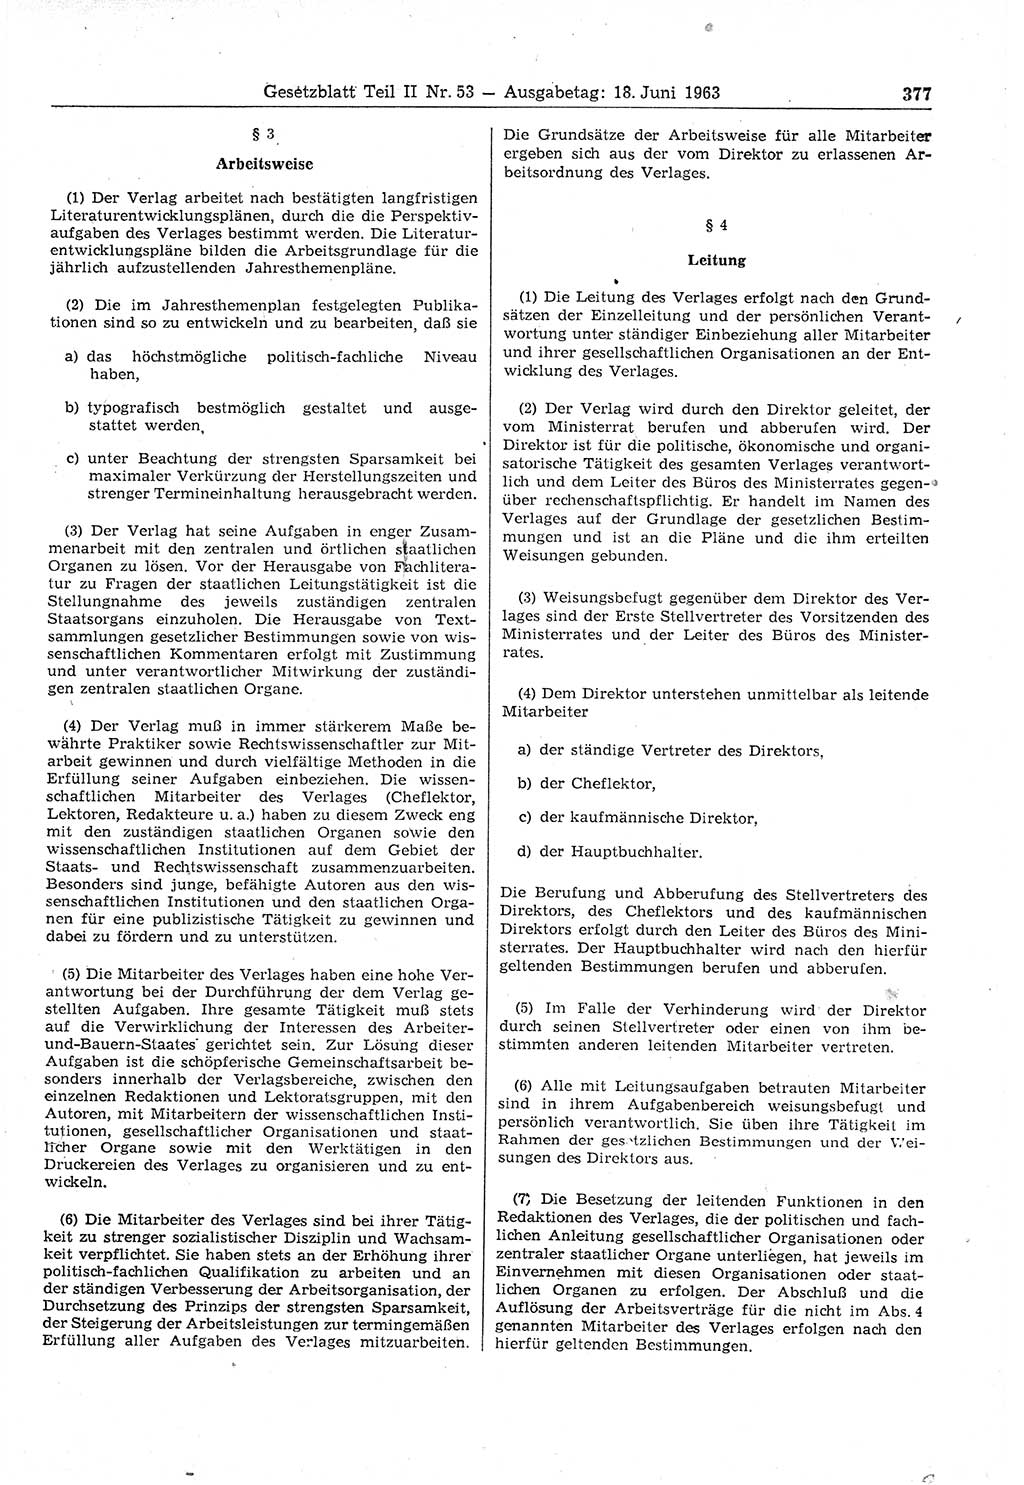 Gesetzblatt (GBl.) der Deutschen Demokratischen Republik (DDR) Teil ⅠⅠ 1963, Seite 377 (GBl. DDR ⅠⅠ 1963, S. 377)